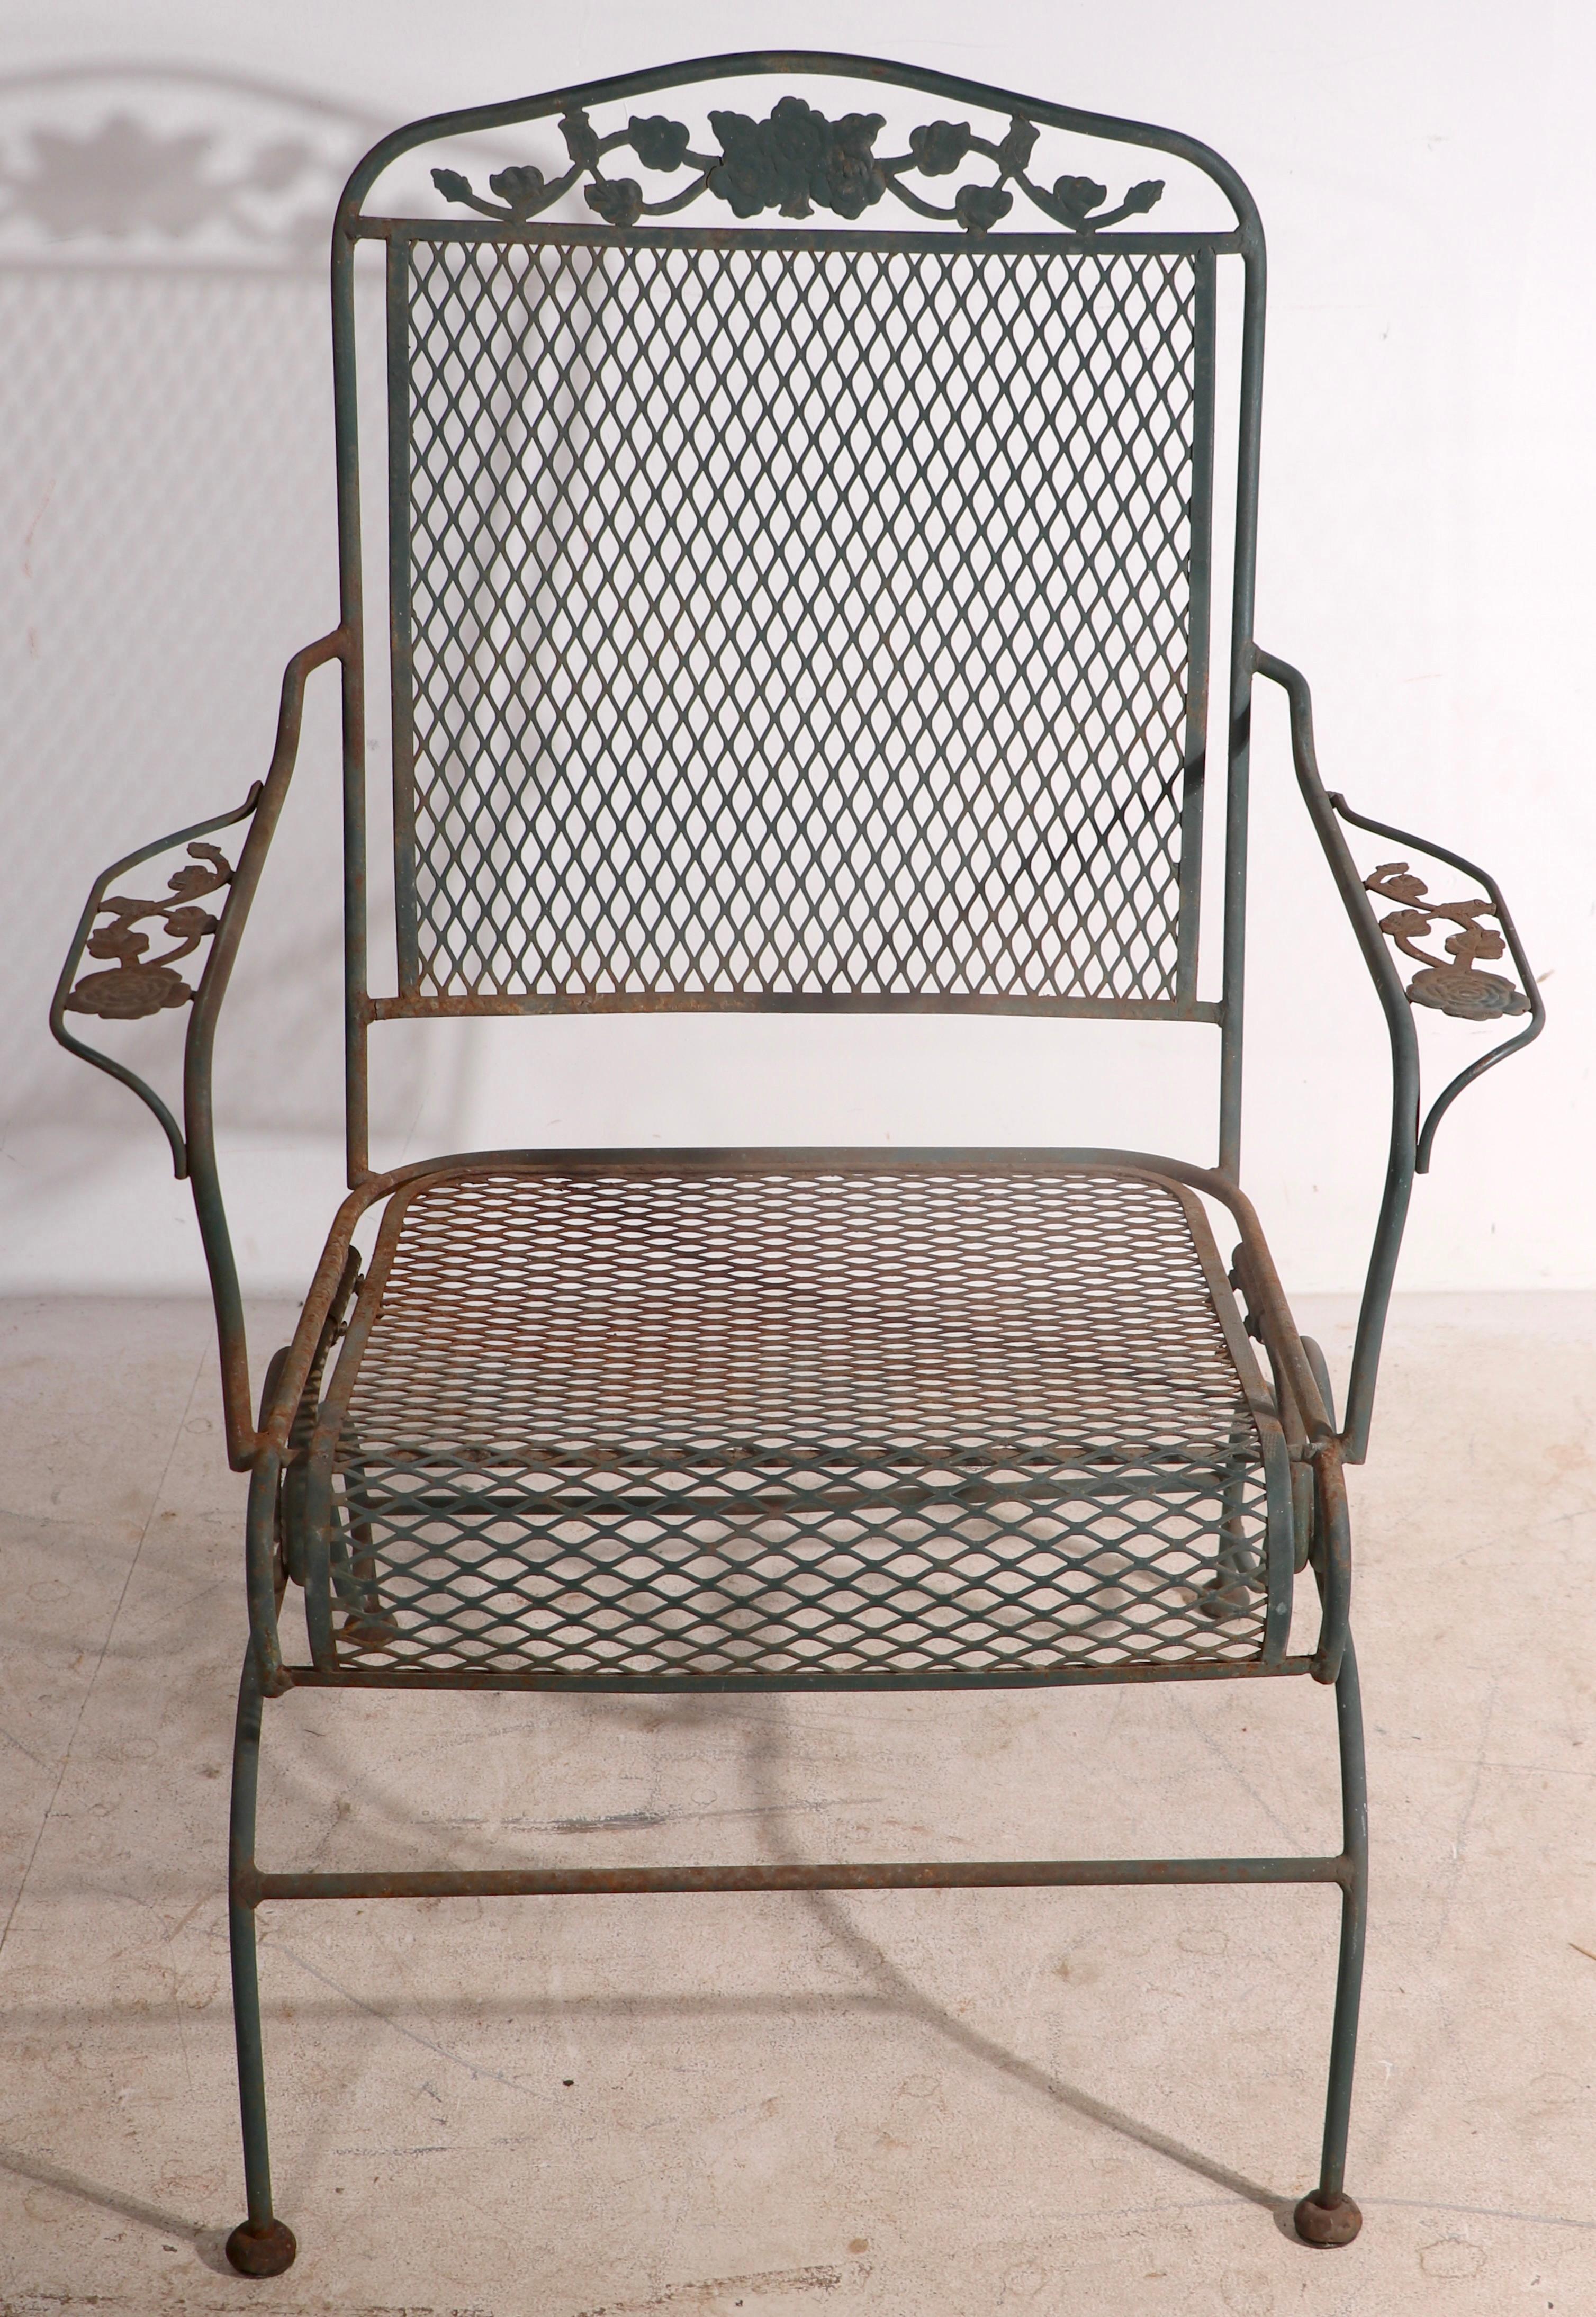 Chaise longue en fer forgé et en maille métallique avec siège à ressort de Meadowcraft, dans le motif Dogwood, circa 1950 - 1960's. La chaise est en très bon état, en provenance d'une succession, et ne présente qu'une légère usure cosmétique de la